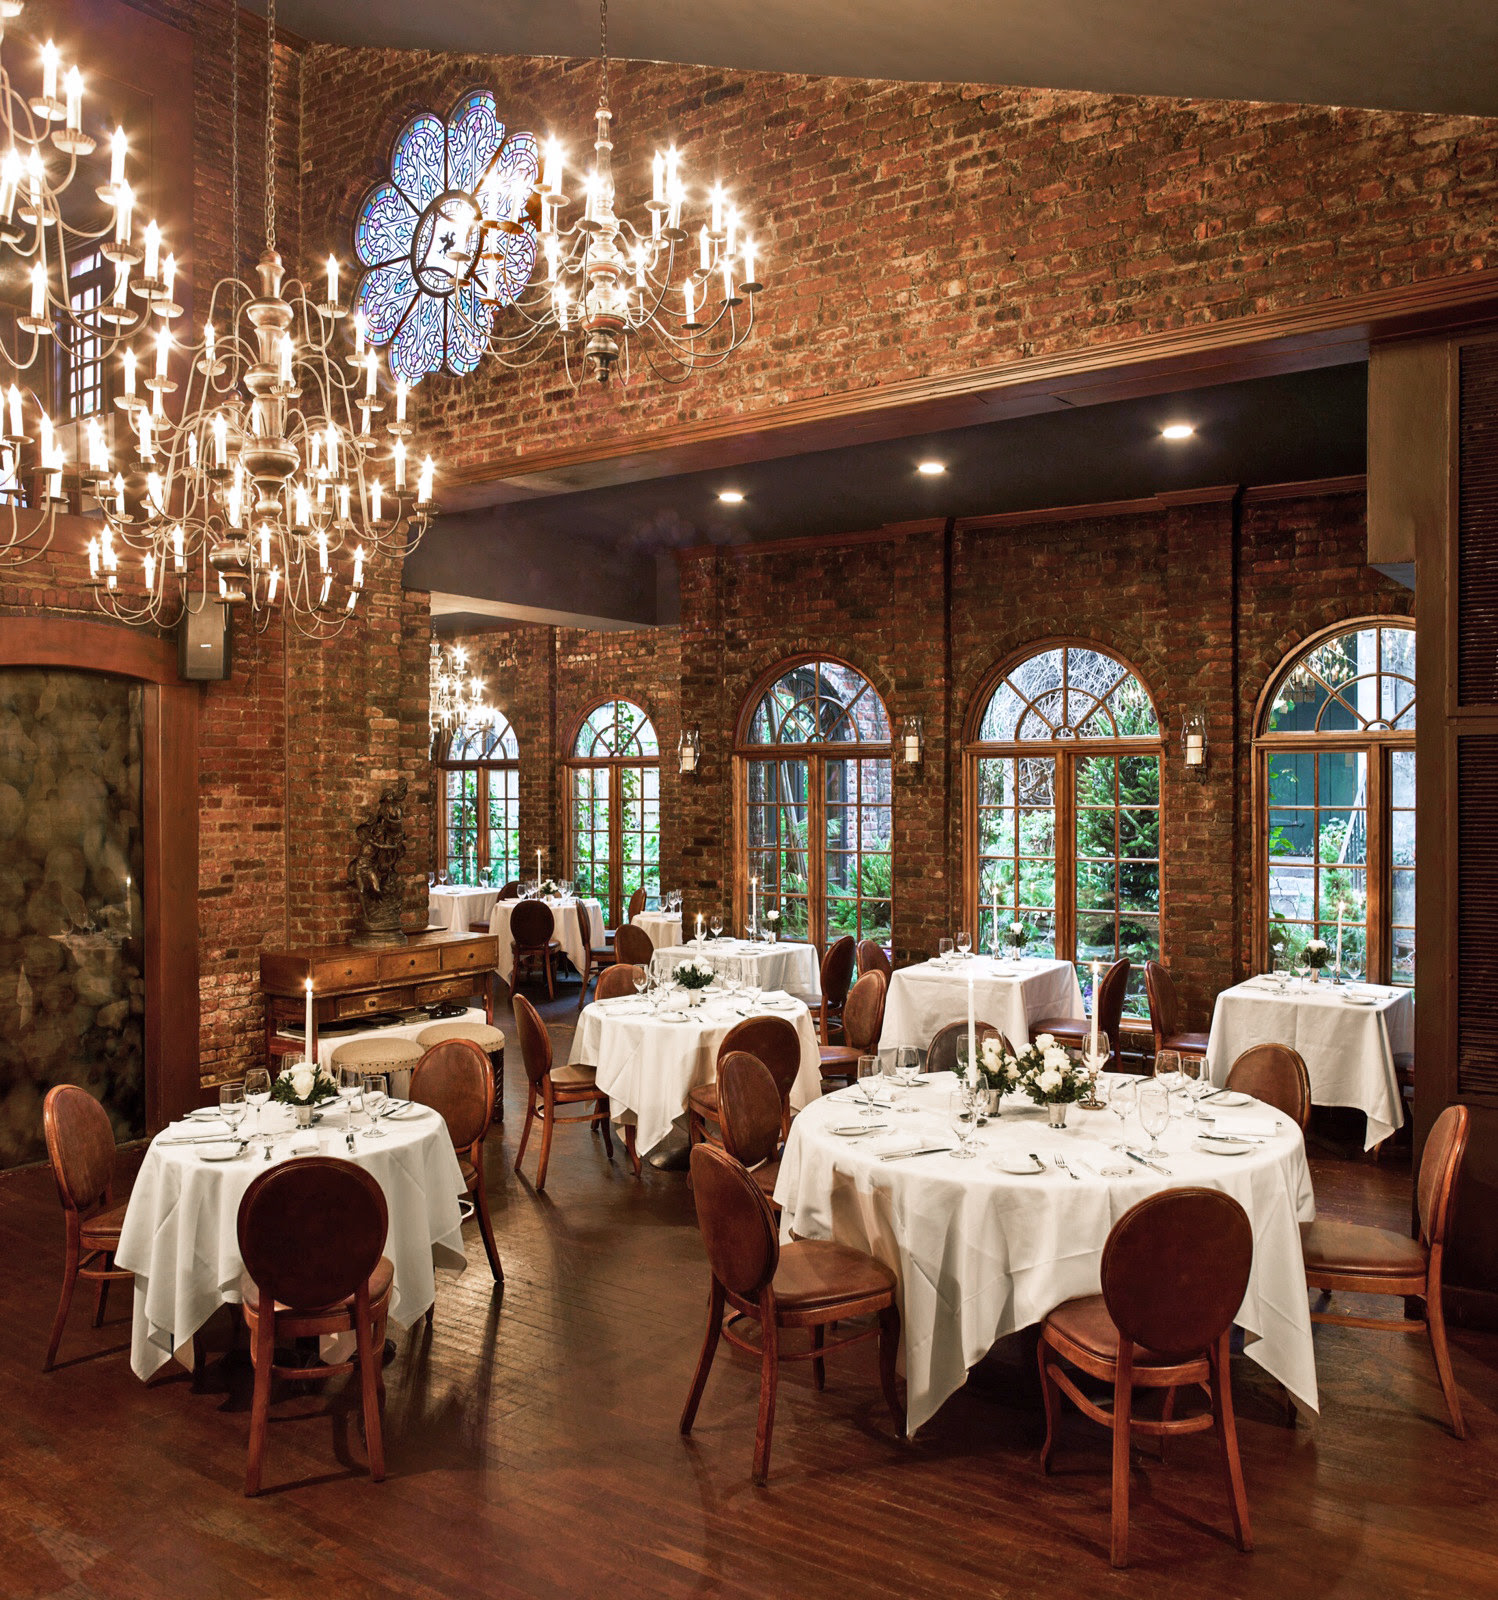 michaelressdesigns: Most Romantic Restaurant In Baltimore